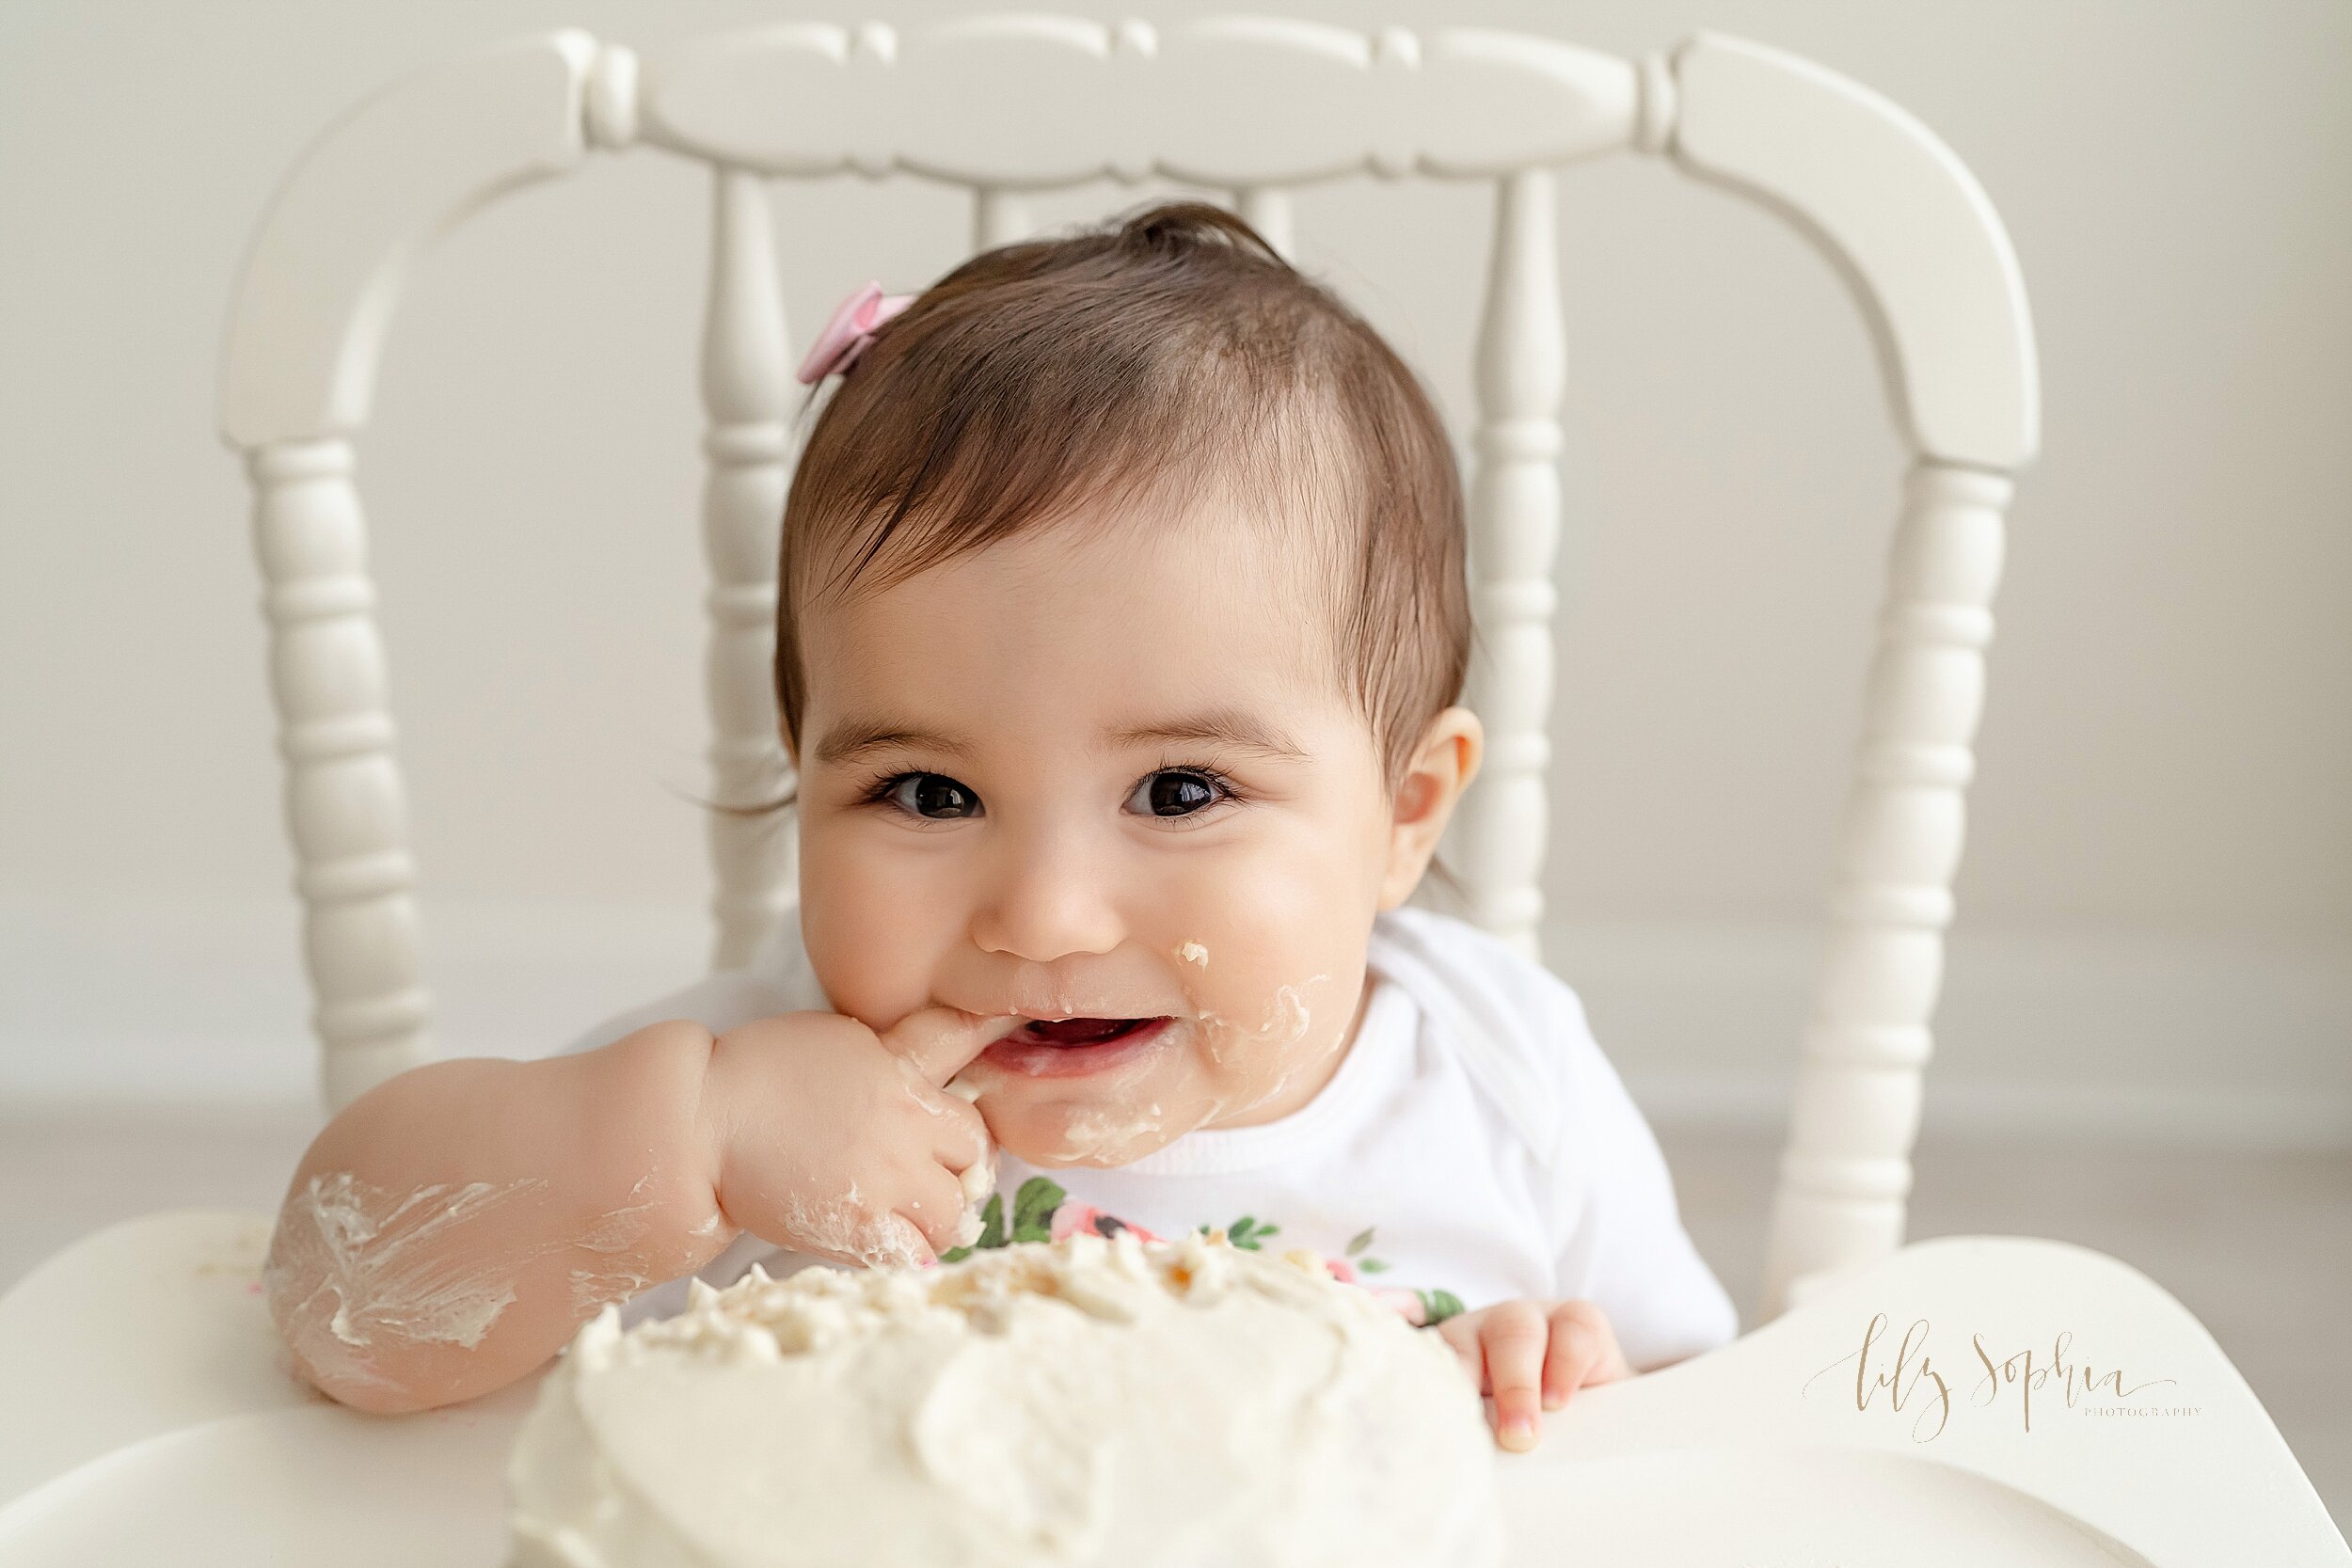 atlanta-georgia-buckhead-brookhaven-midtown-milestone-first-birthday-cake-smash-baby-girl-family-pictures_5644.jpg